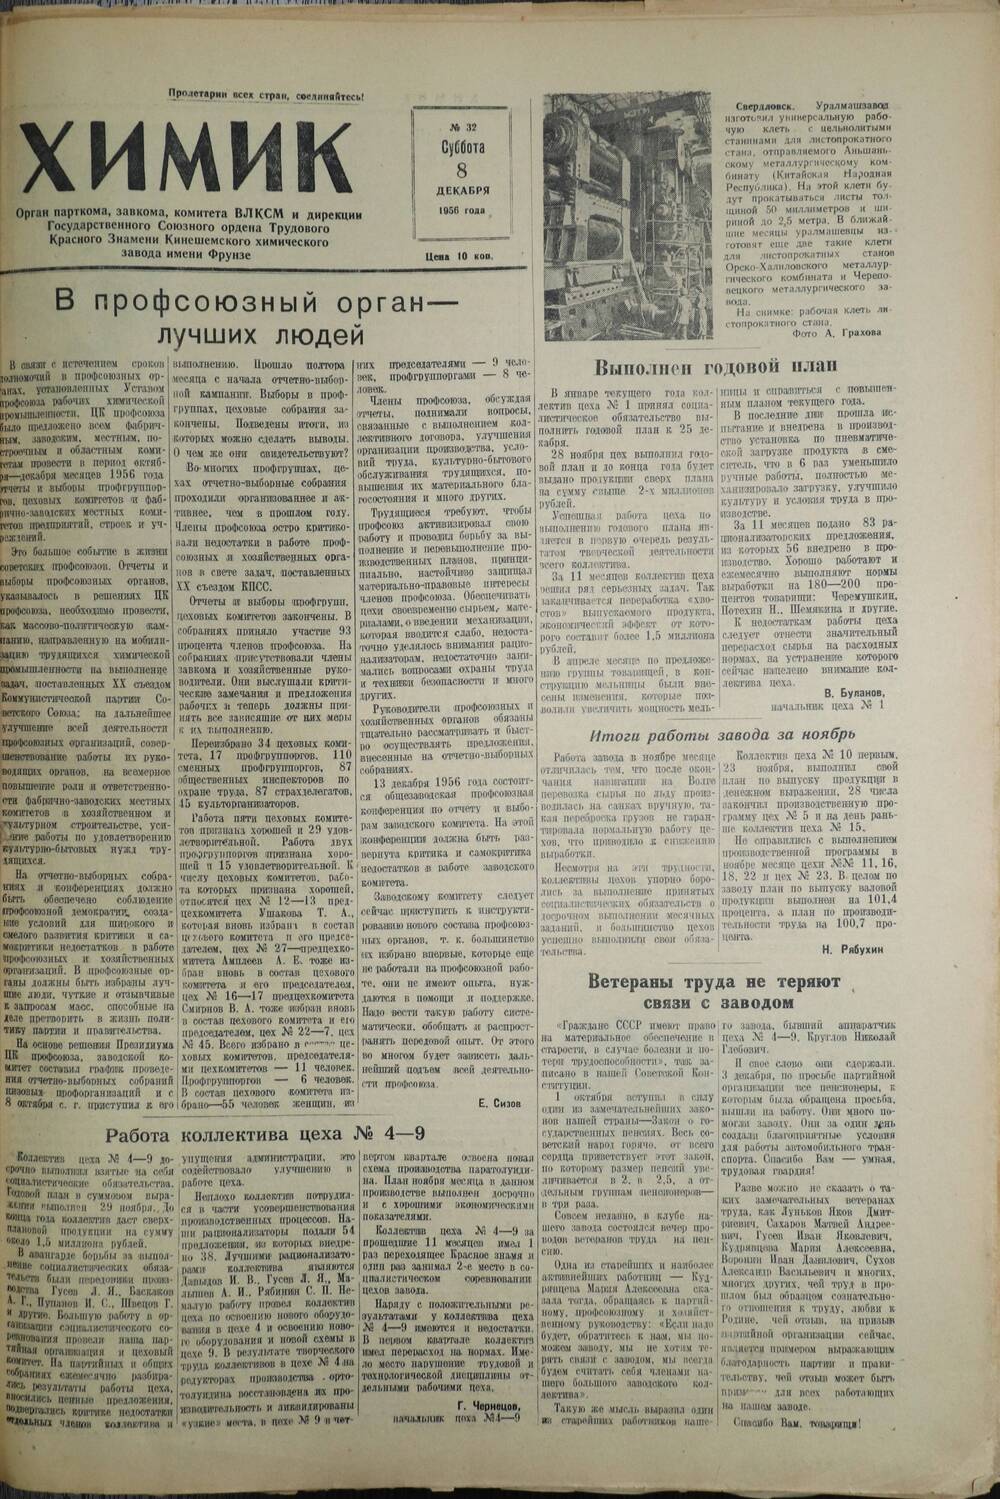 Газета «Химик» № 32 от 8 декабря 1956 года.